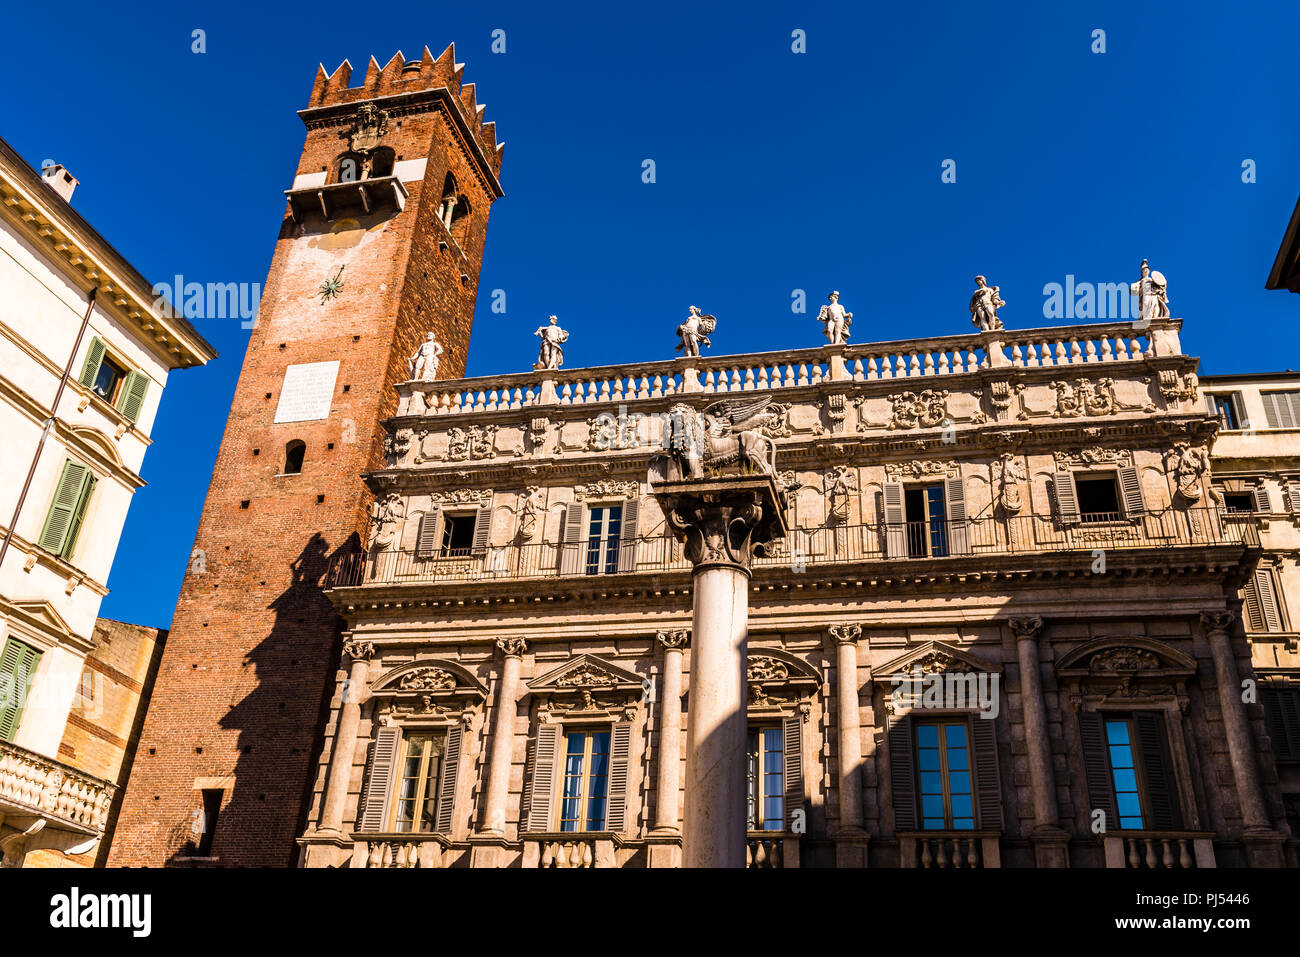 Palazzo Maffei against a dark blue sky in Piazza delle Erbe in Verona, Italy Stock Photo